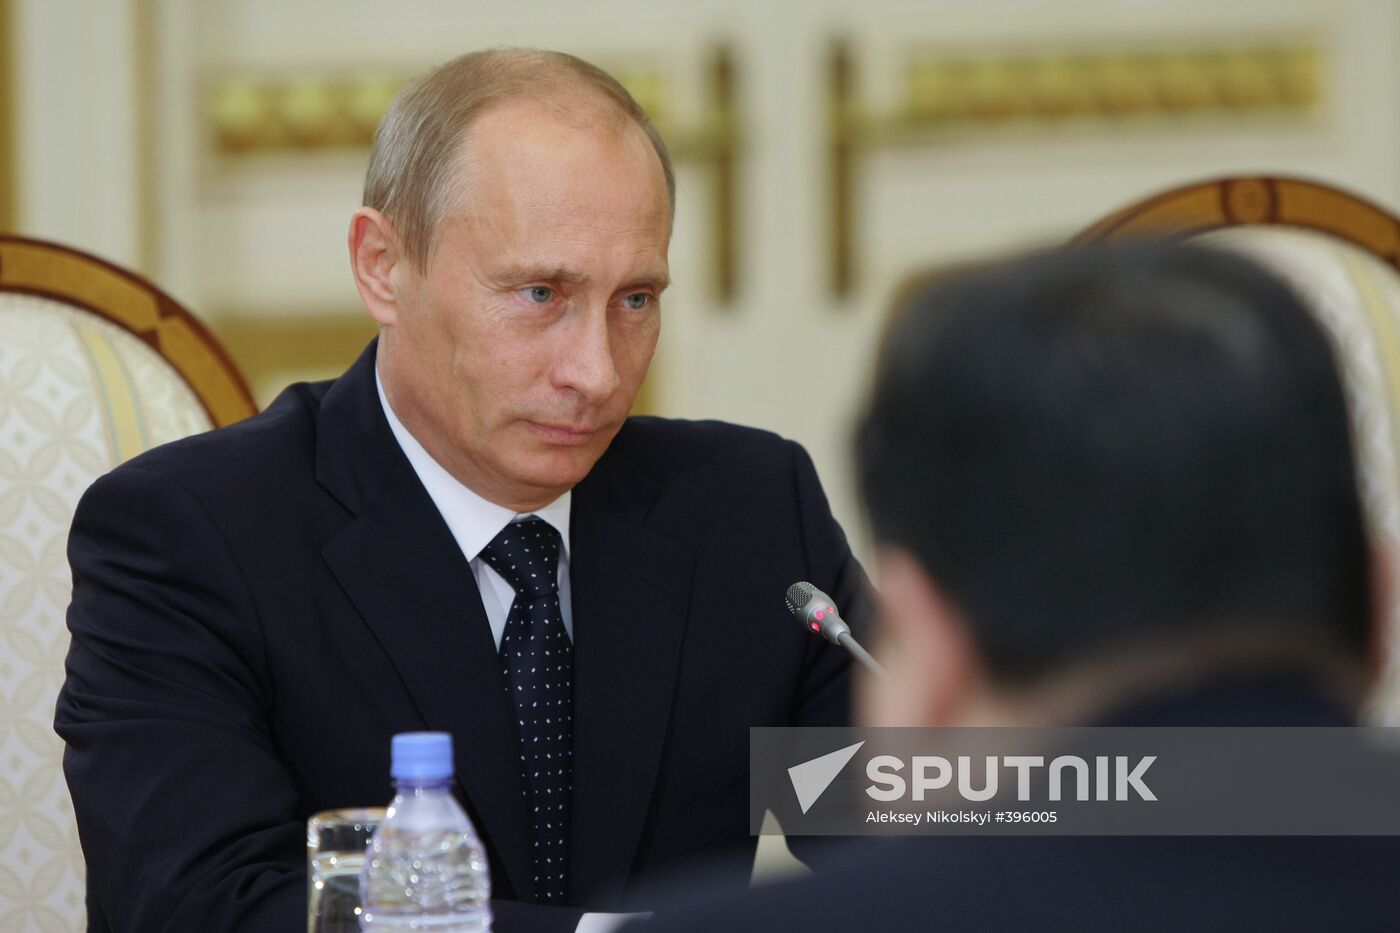 Meeting of Vladimir Putin and Nursultan Nazarbayev